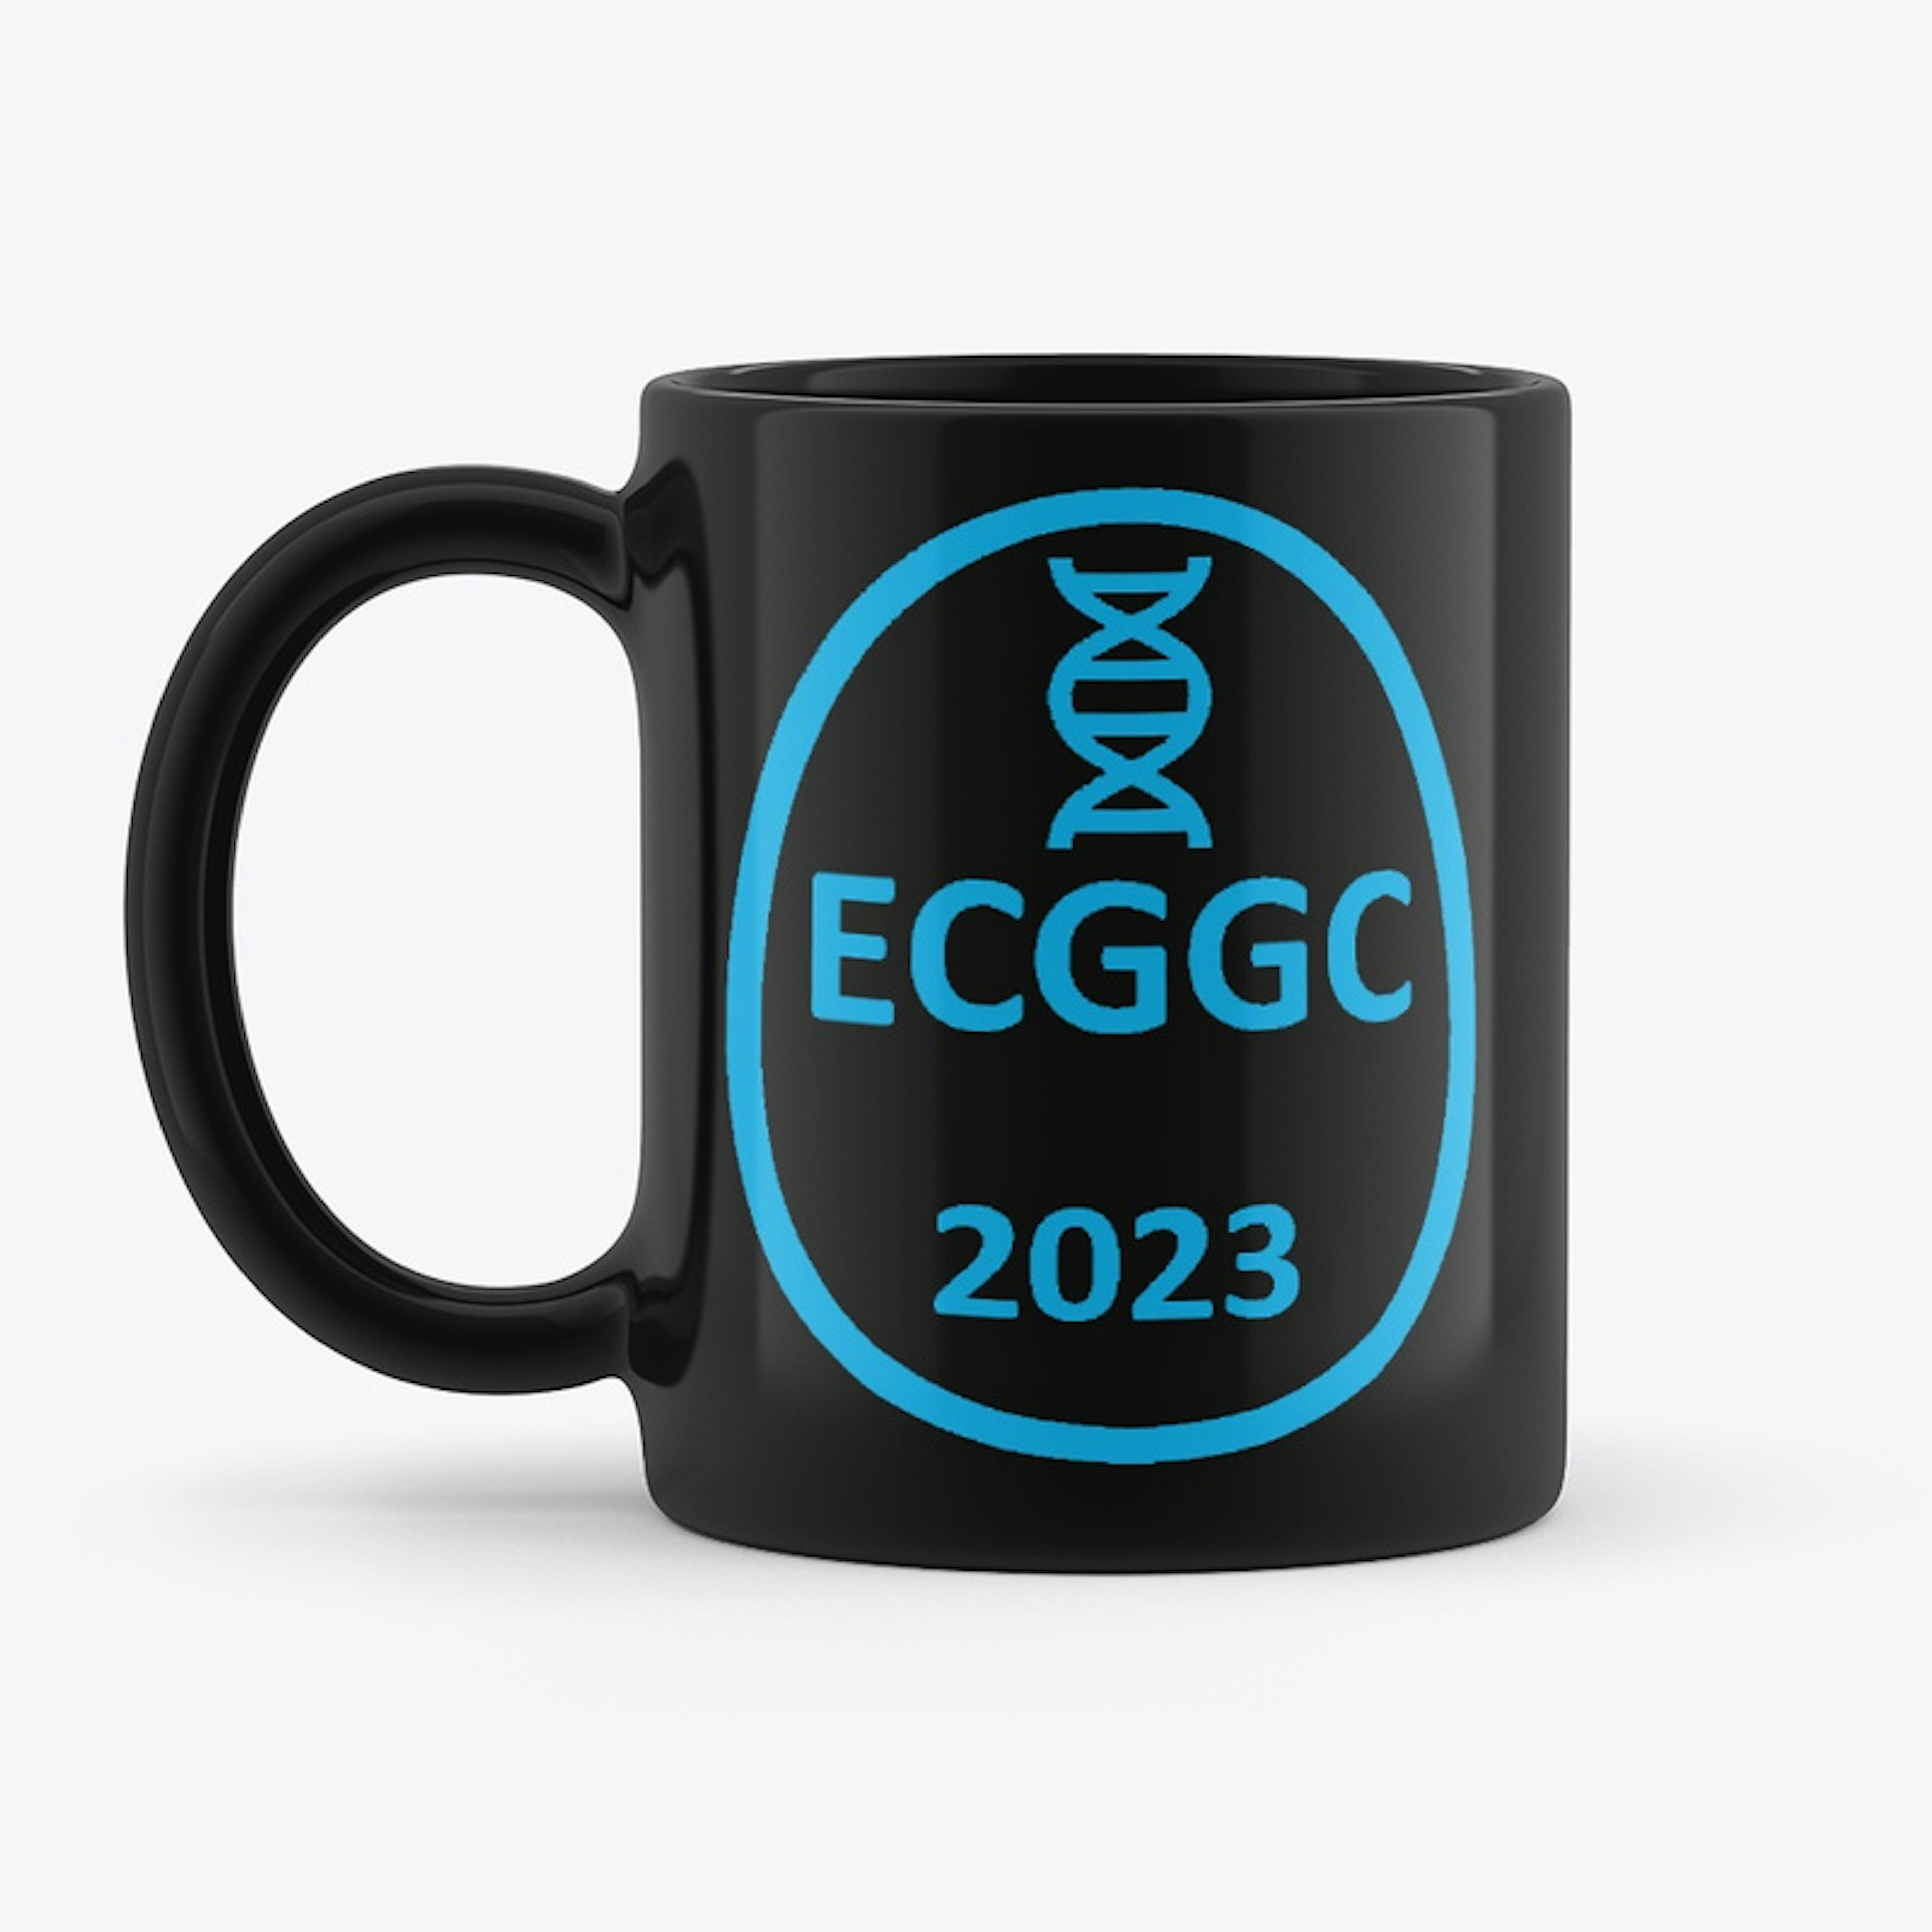 ECGGC 2023 Mug